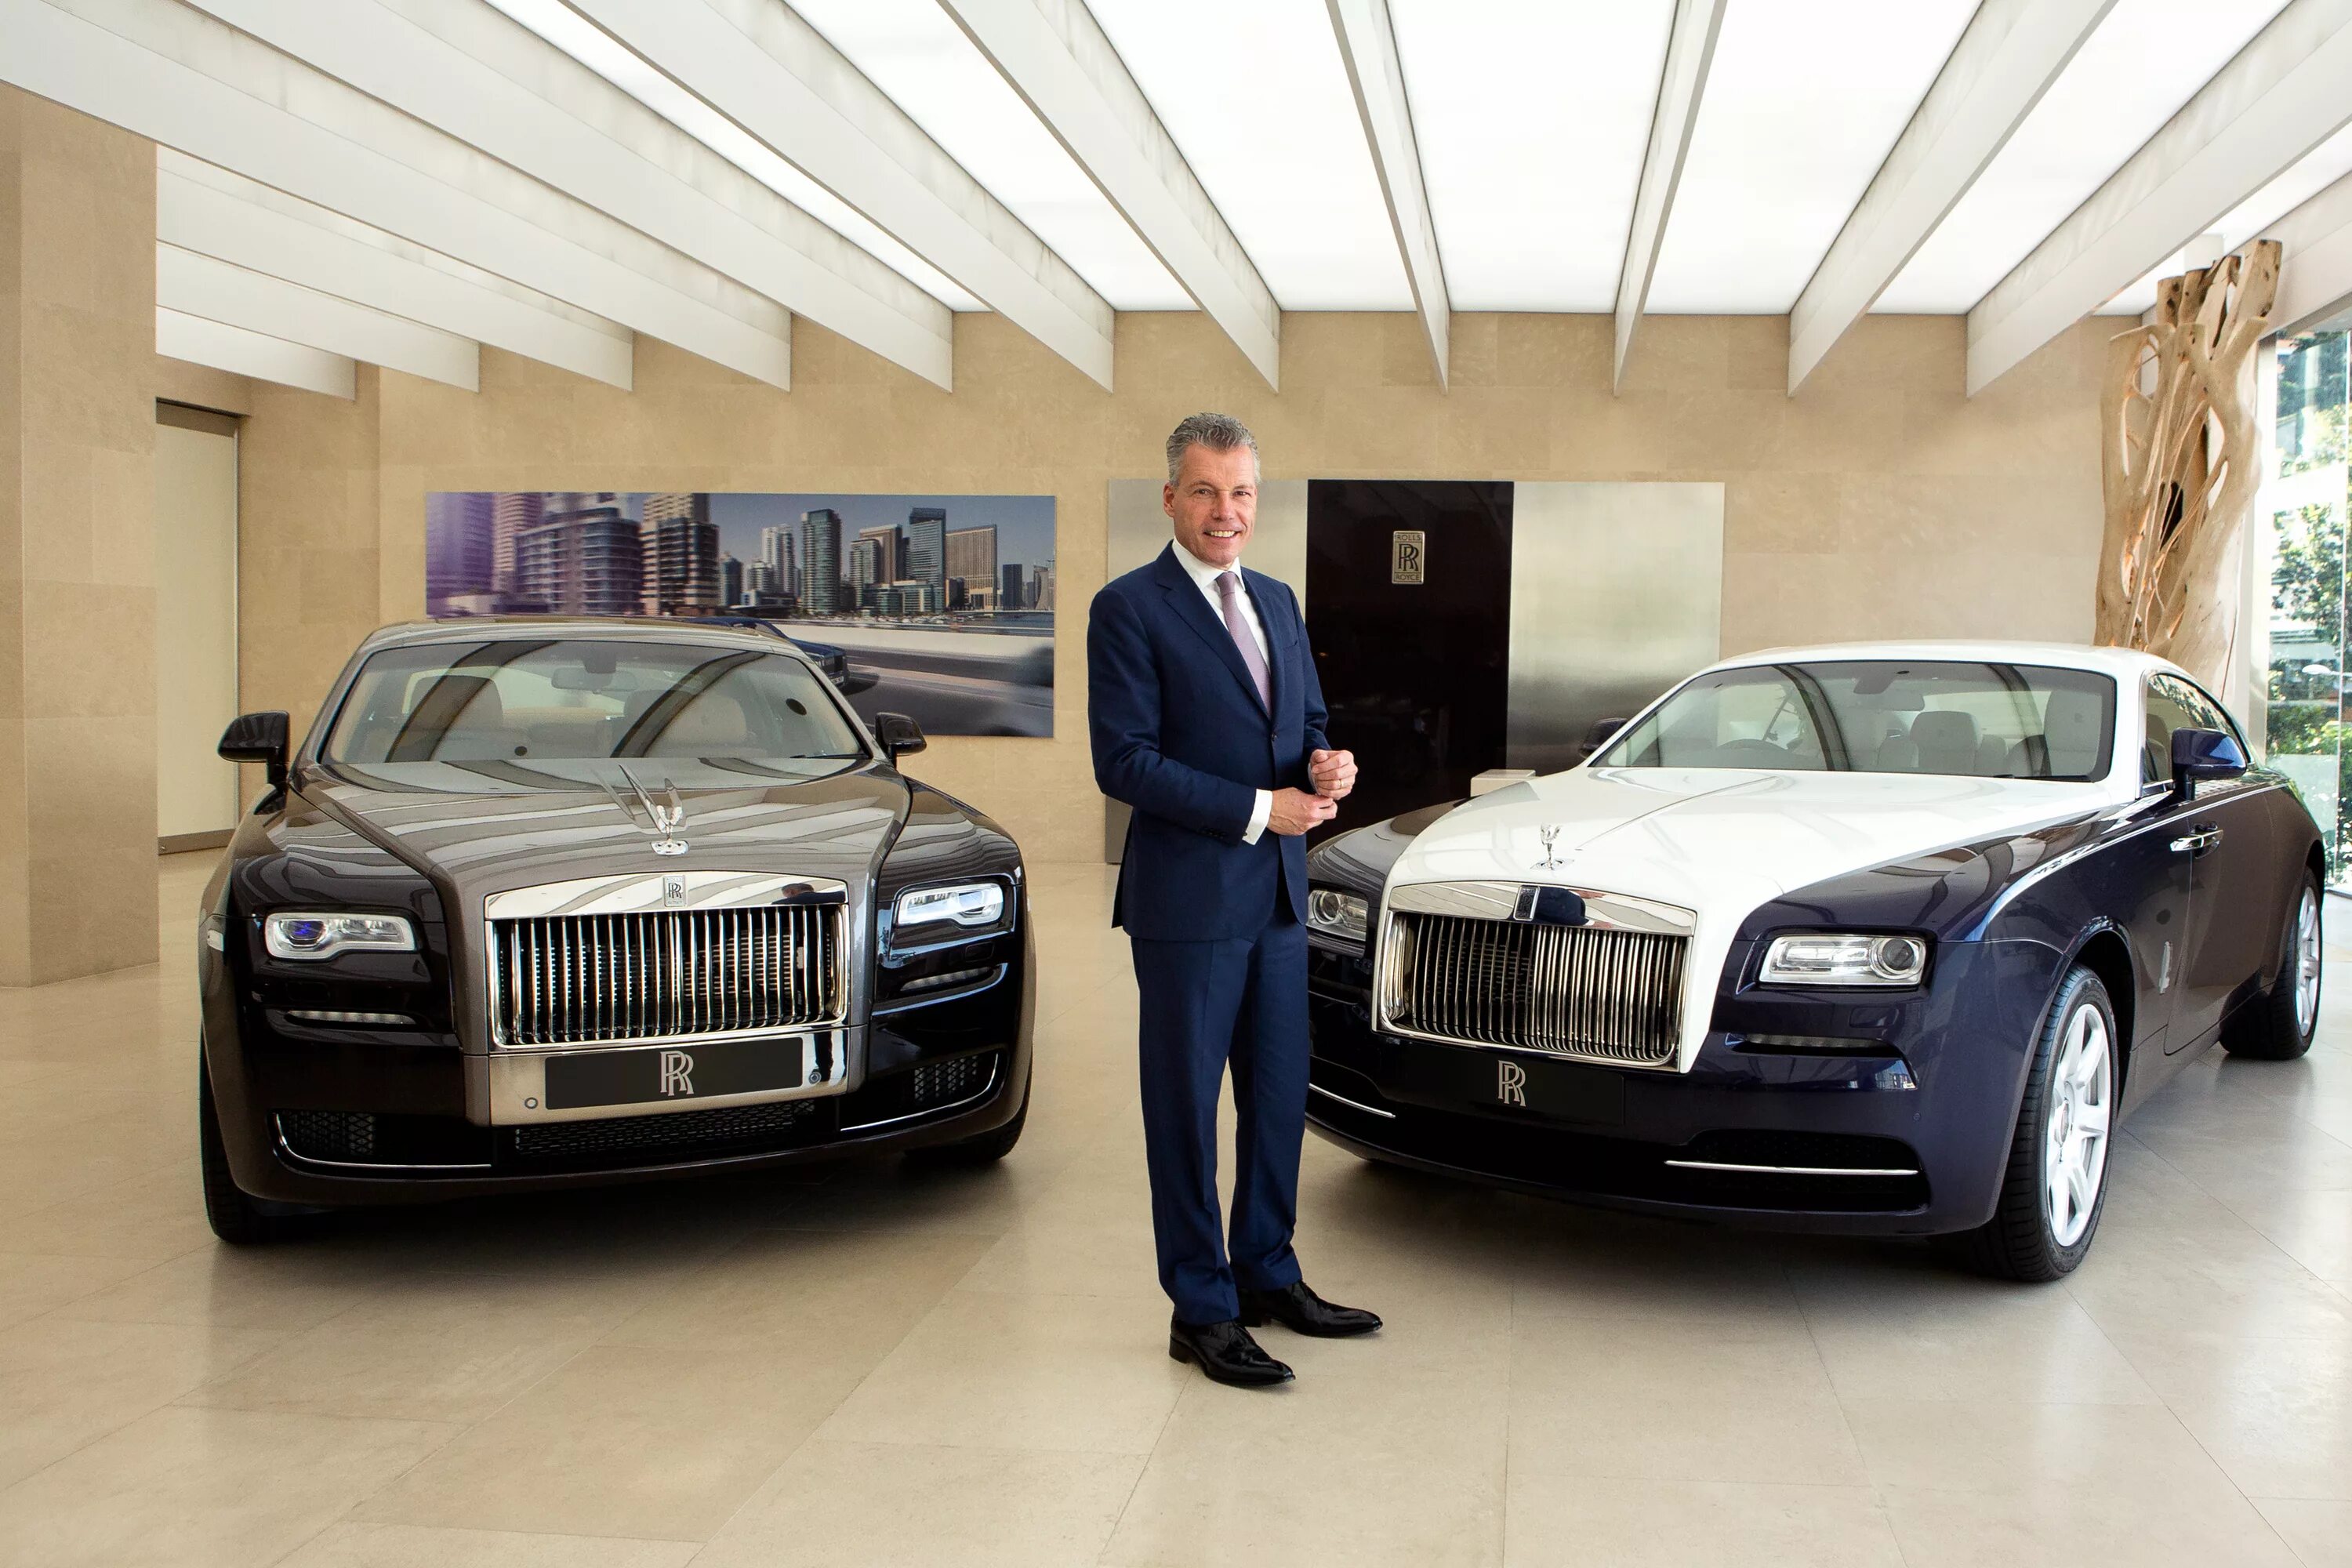 Самые богатые фирмы. Rolls Royce 2022. Машины депутатов Роллс Ройс. Владелец Роллс Ройс.